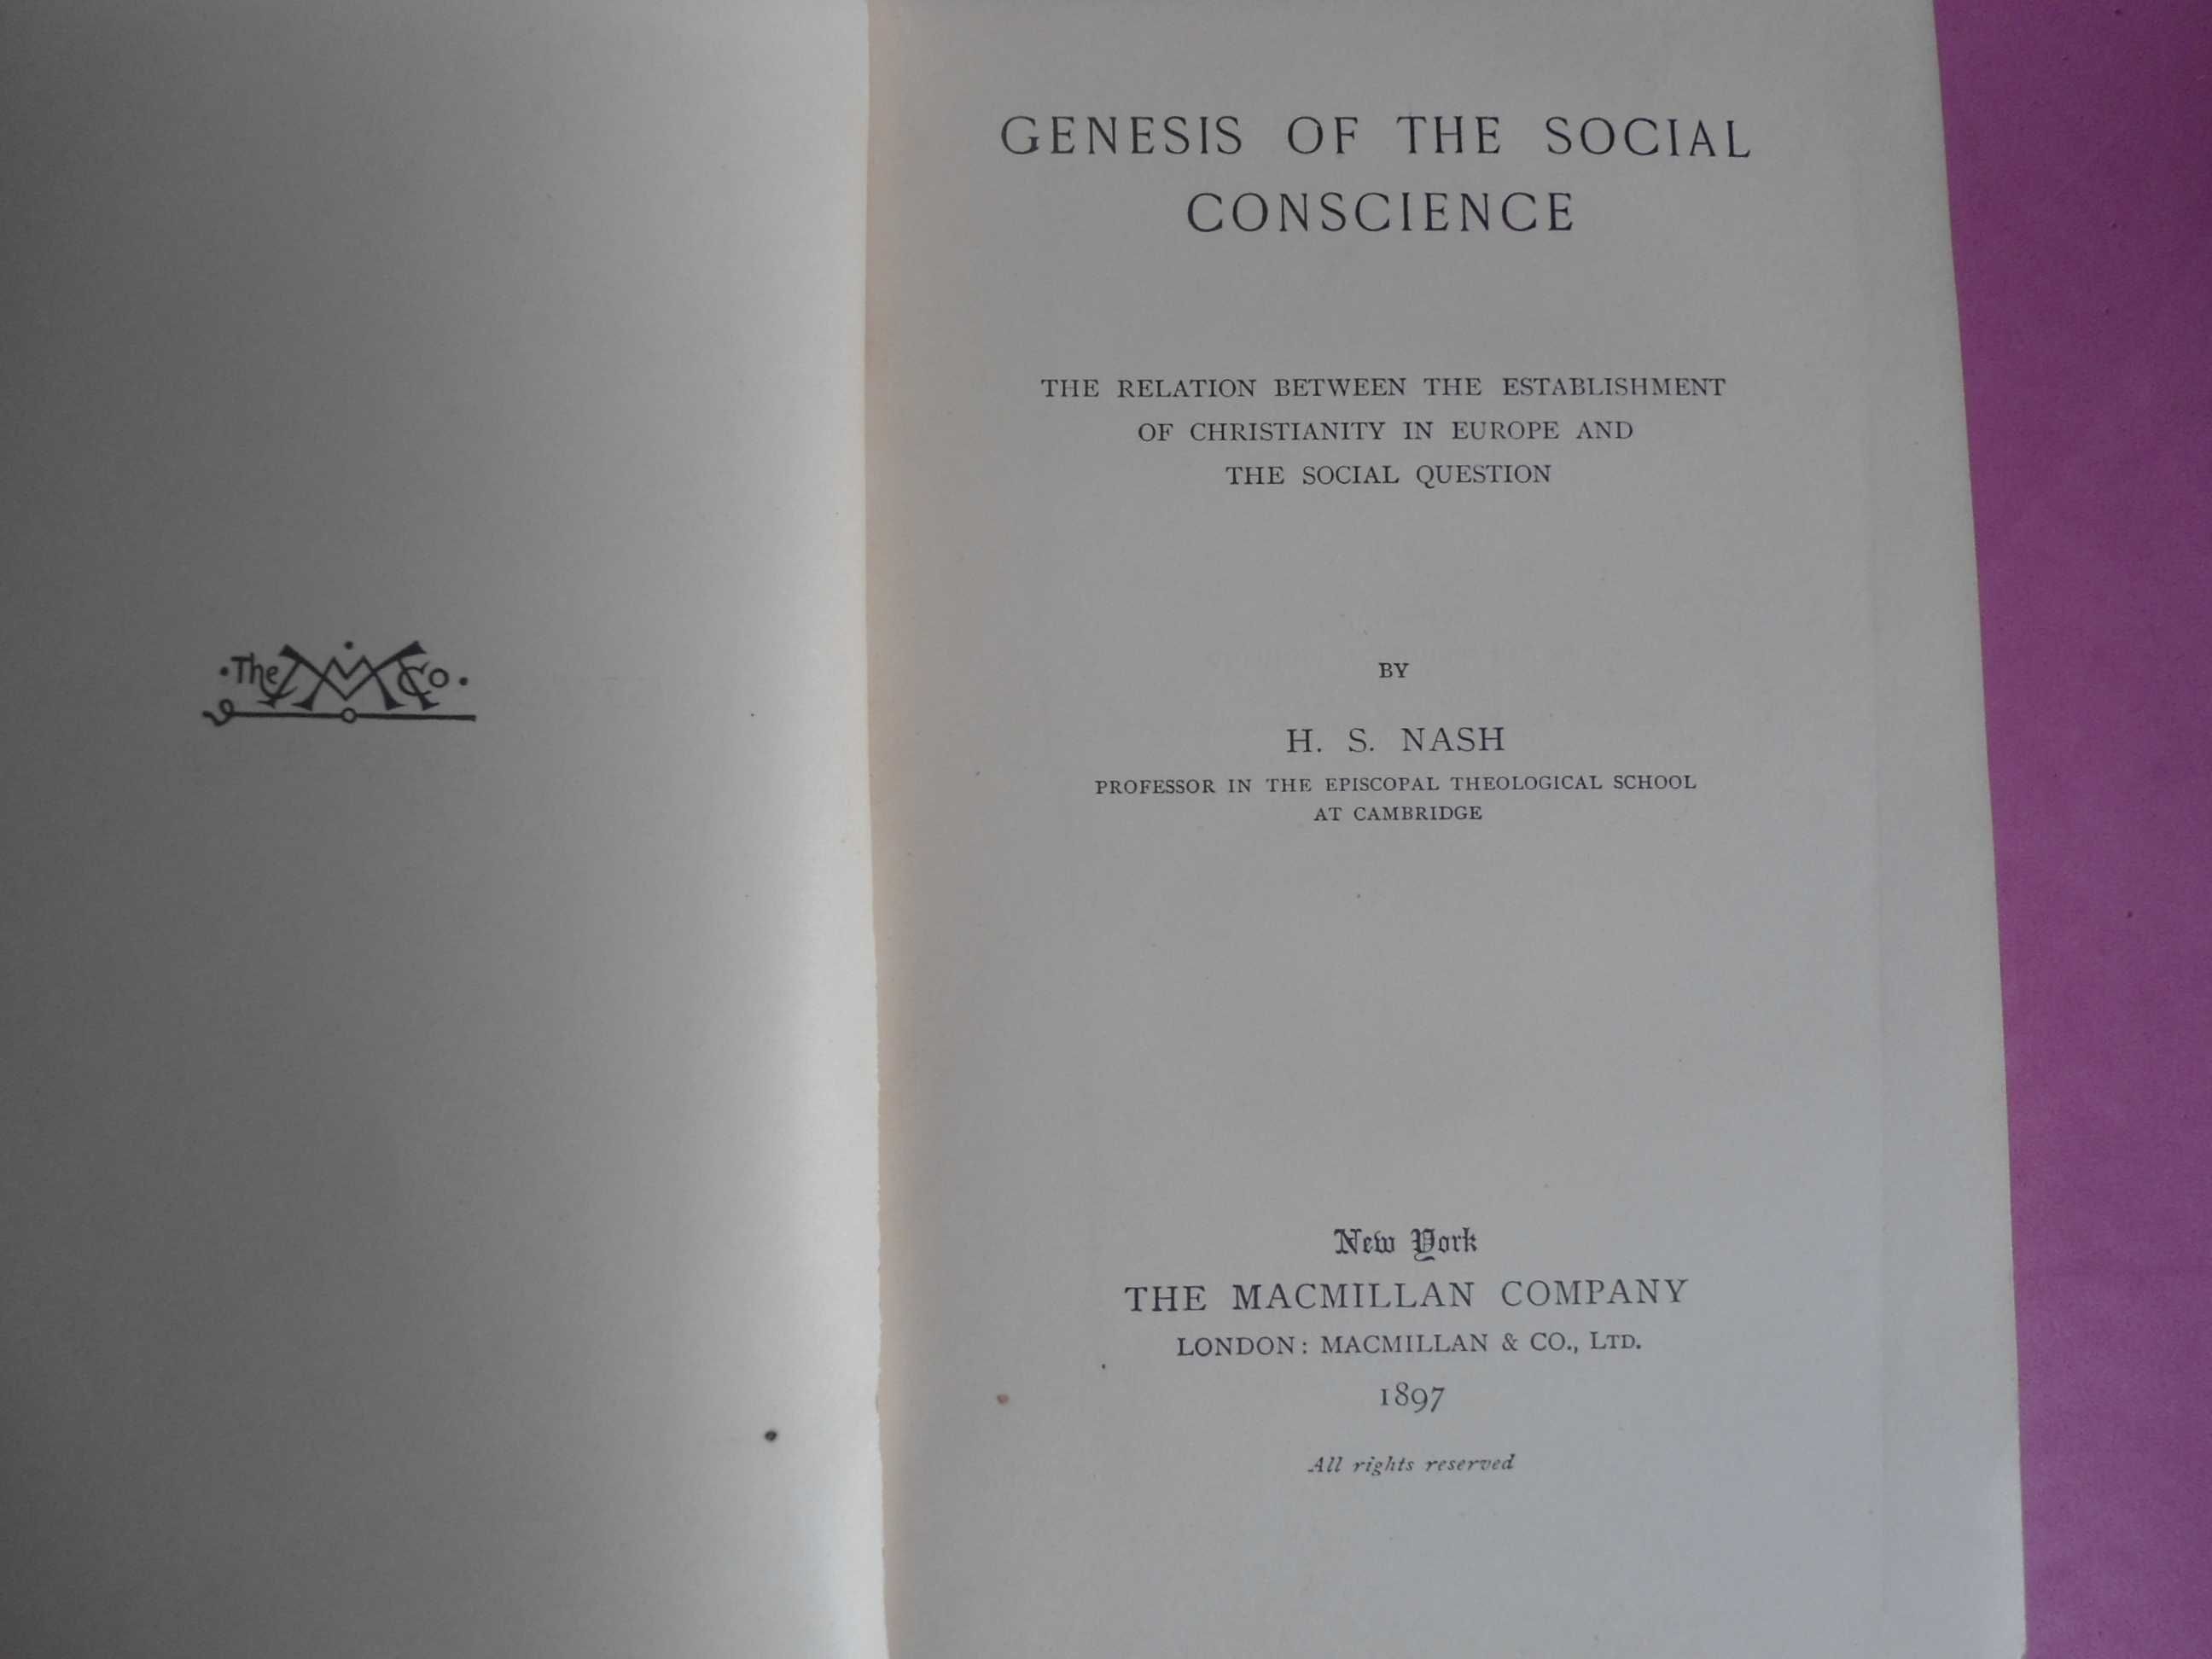 Genesis of the social conscience por H.S. Nash (1897)